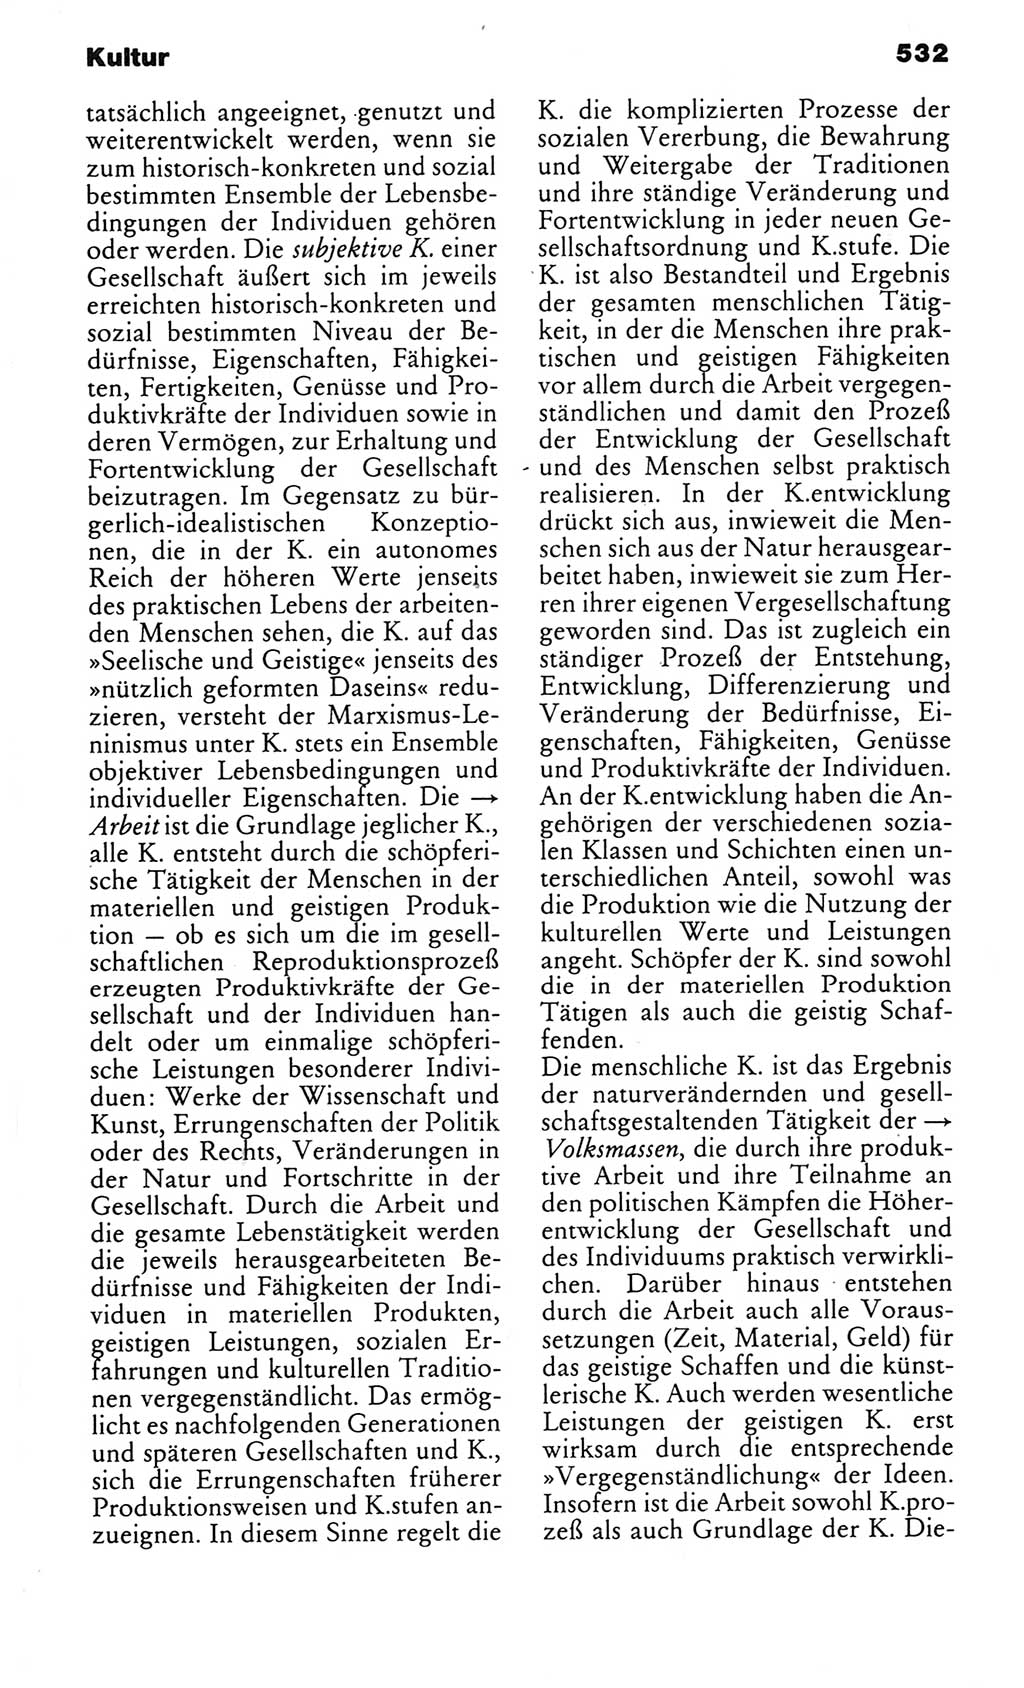 Kleines politisches Wörterbuch [Deutsche Demokratische Republik (DDR)] 1983, Seite 532 (Kl. pol. Wb. DDR 1983, S. 532)